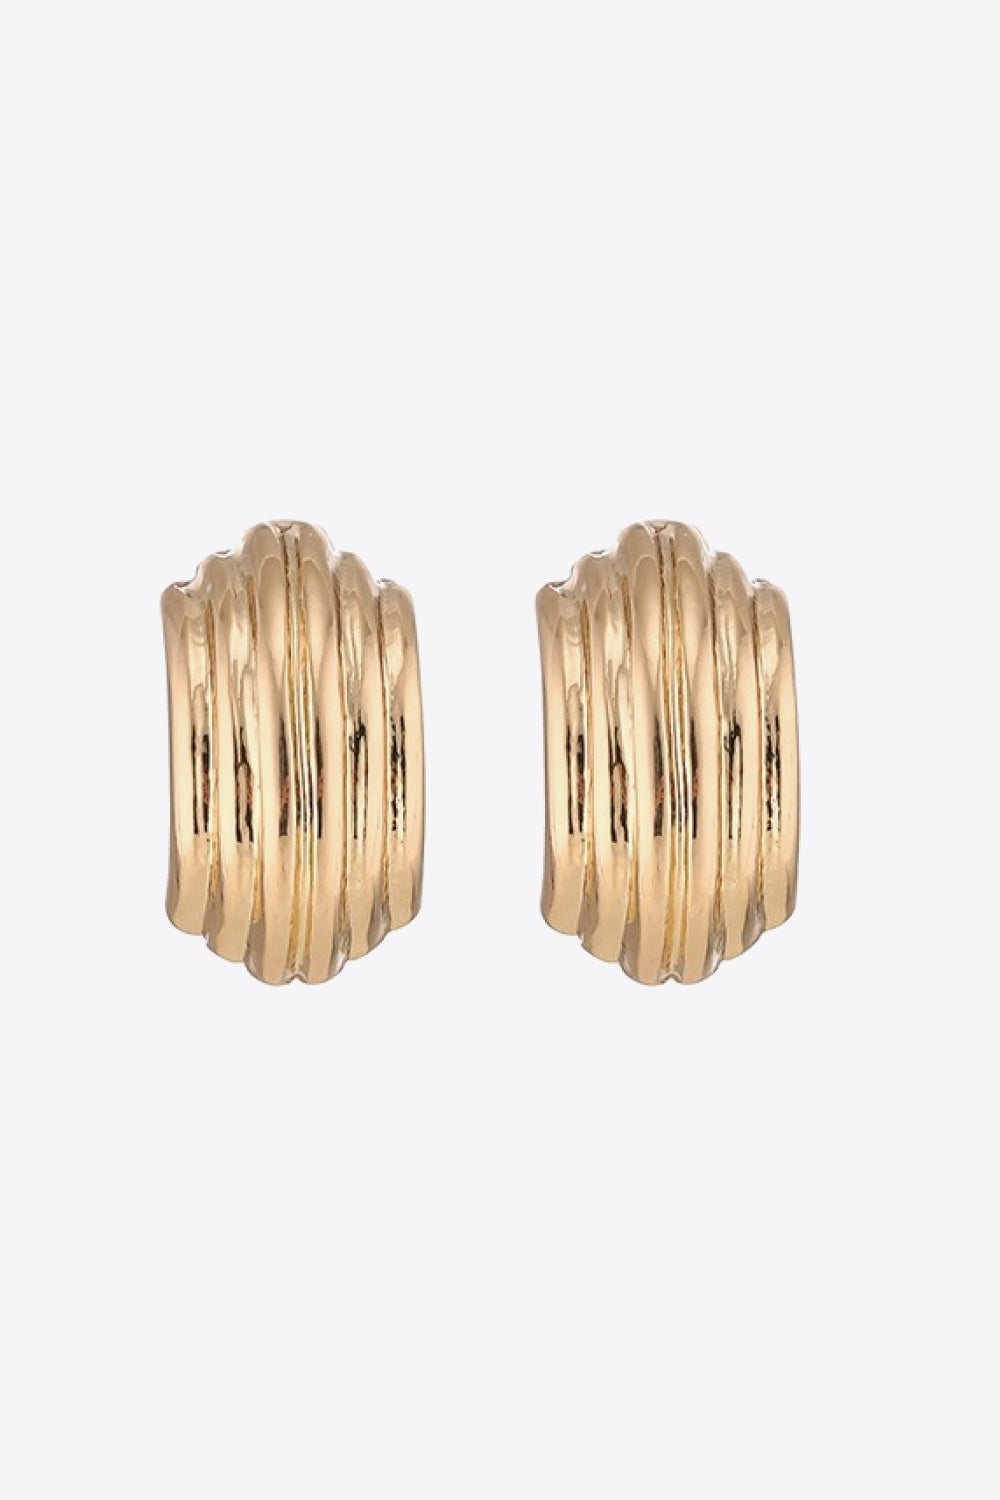 Ribbed Copper Earrings - Earrings - FITGGINS